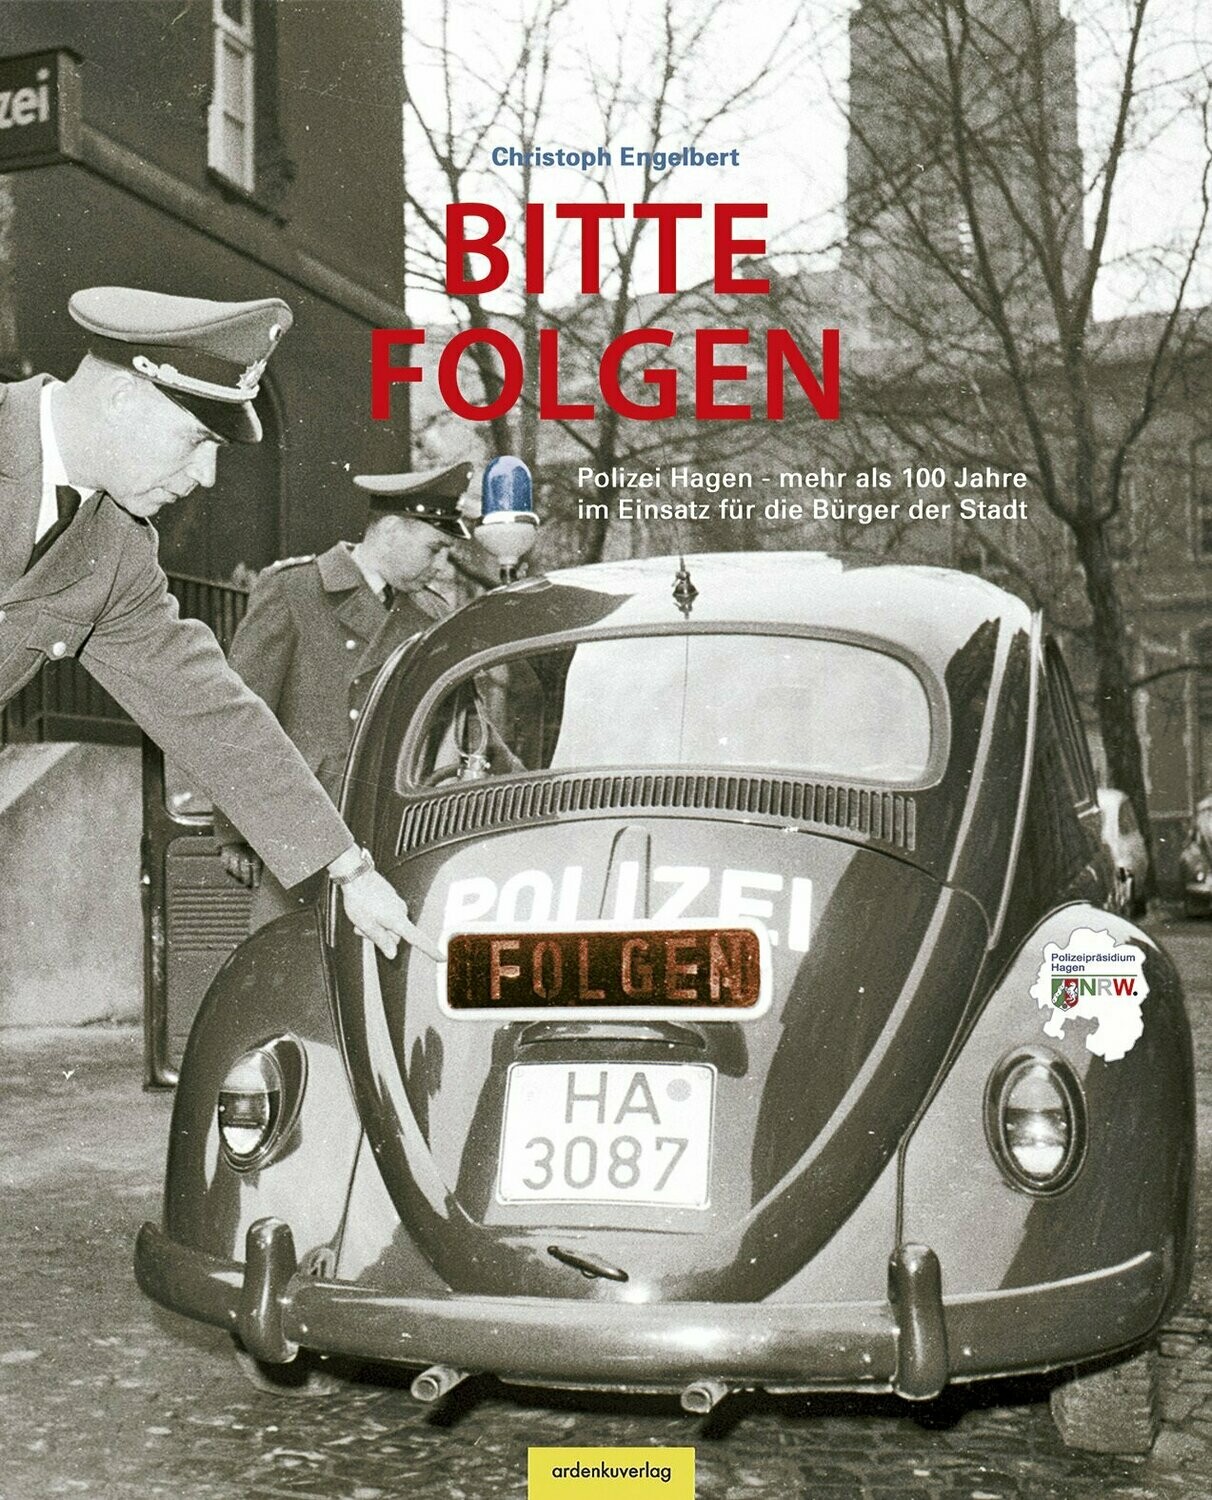 Bitte folgen! - Polizei Hagen